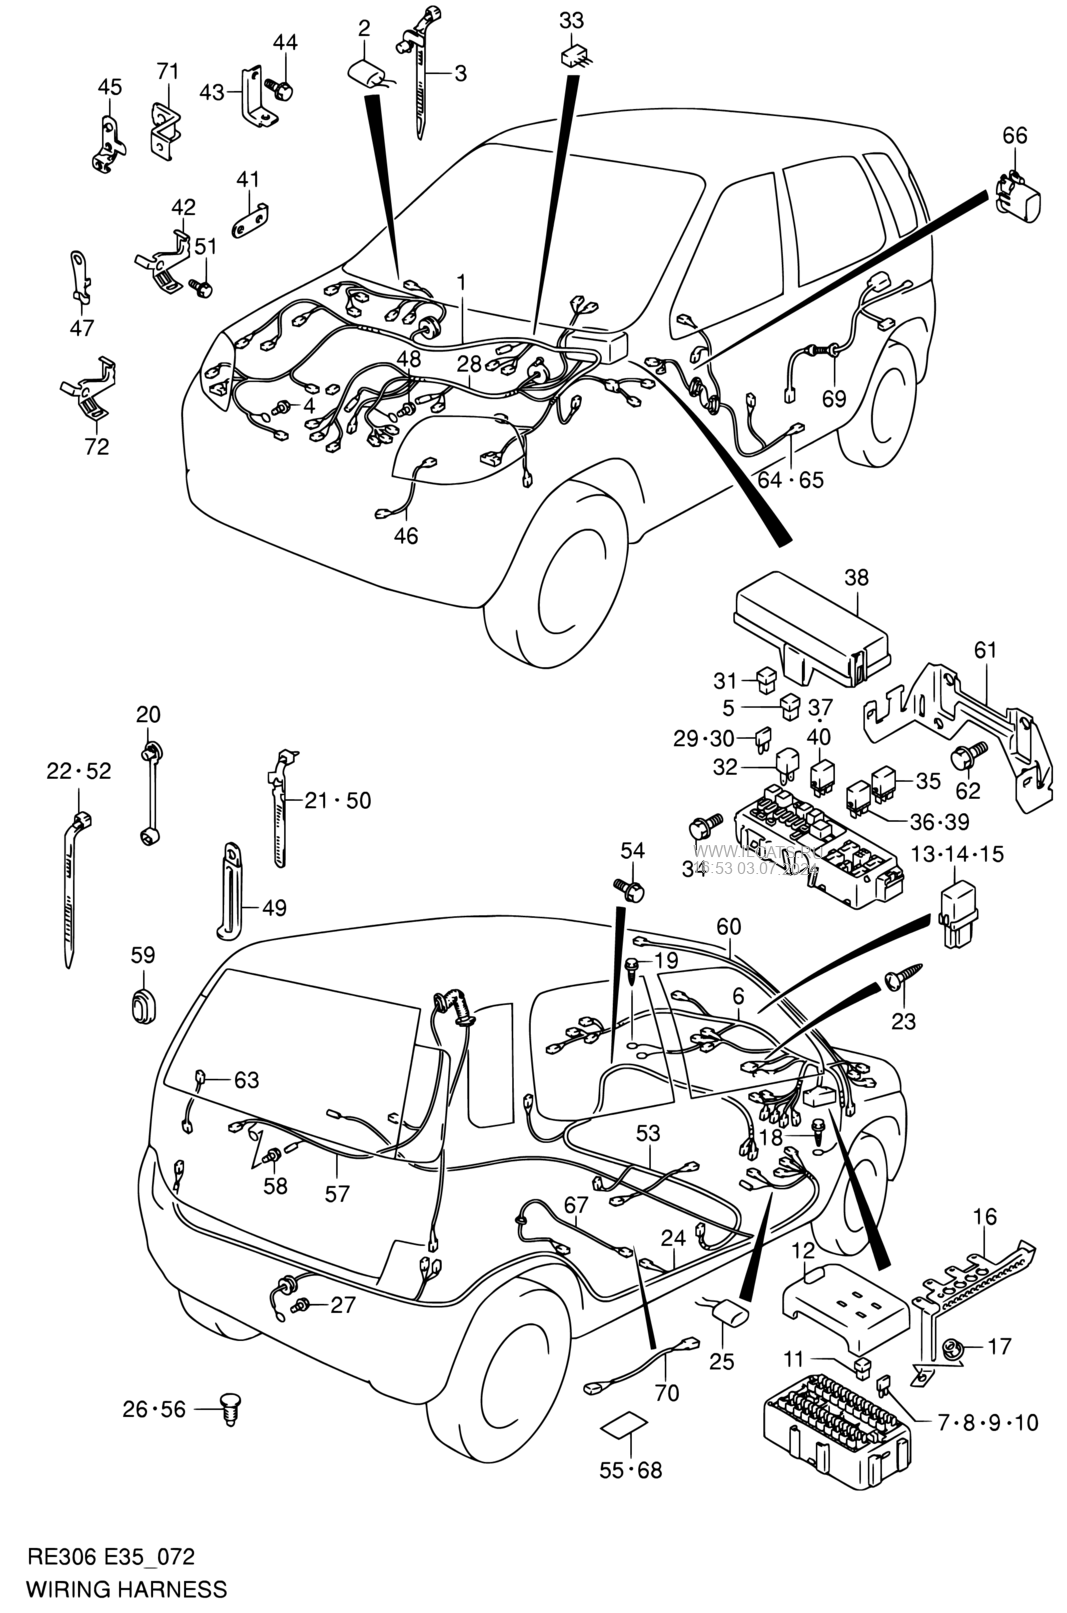 Suzuki Kei Wiring Diagram 1956 Thunderbird Wiring Diagram 1957 Caprice Tukune Jeanjaures37 Fr